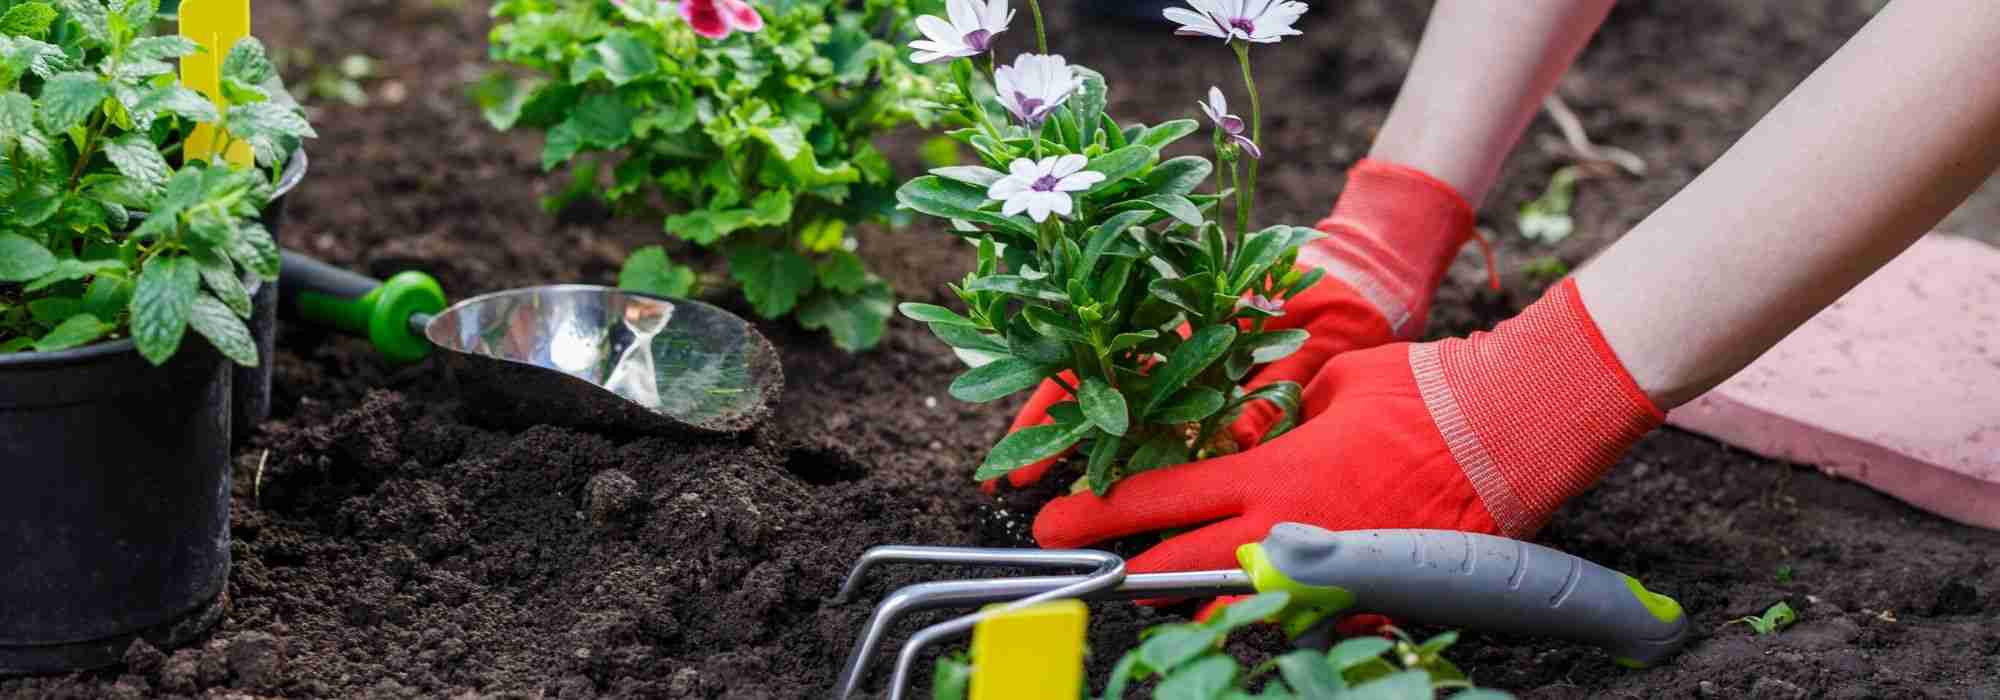 Jardinage : comment éviter les accidents ?